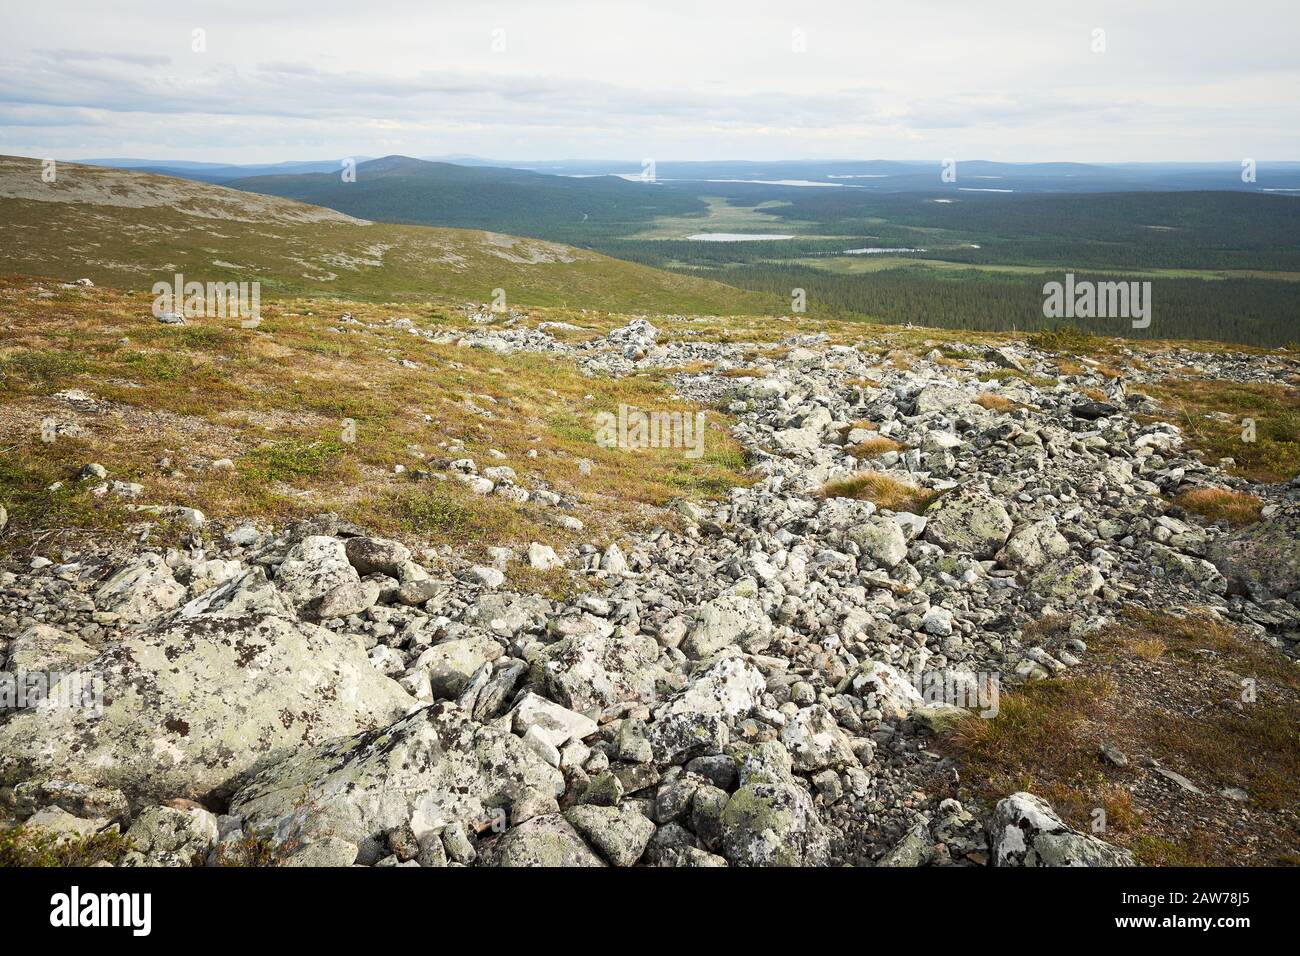 Schöner Panoramablick von einem fiel über Wälder, Seen und Sümpfe Lapplands. Pallas-Yllastunturi National Park, Finnland. Stockfoto